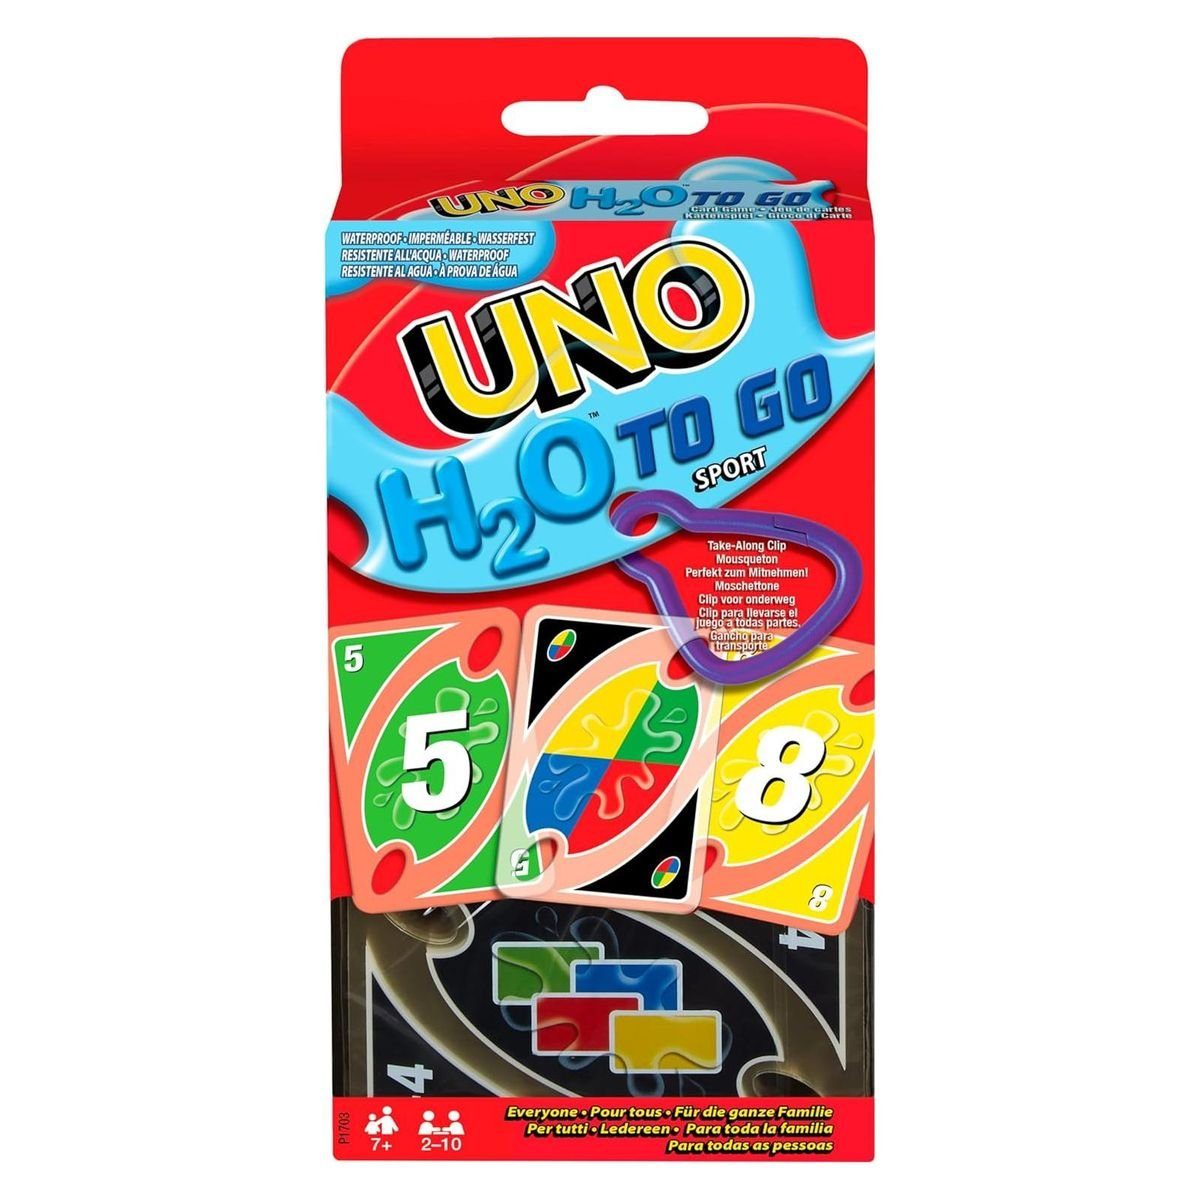 Mattel® Spiel, Mattel P1703 - Mattel Games - UNO H2O To Go, Kartenspiel